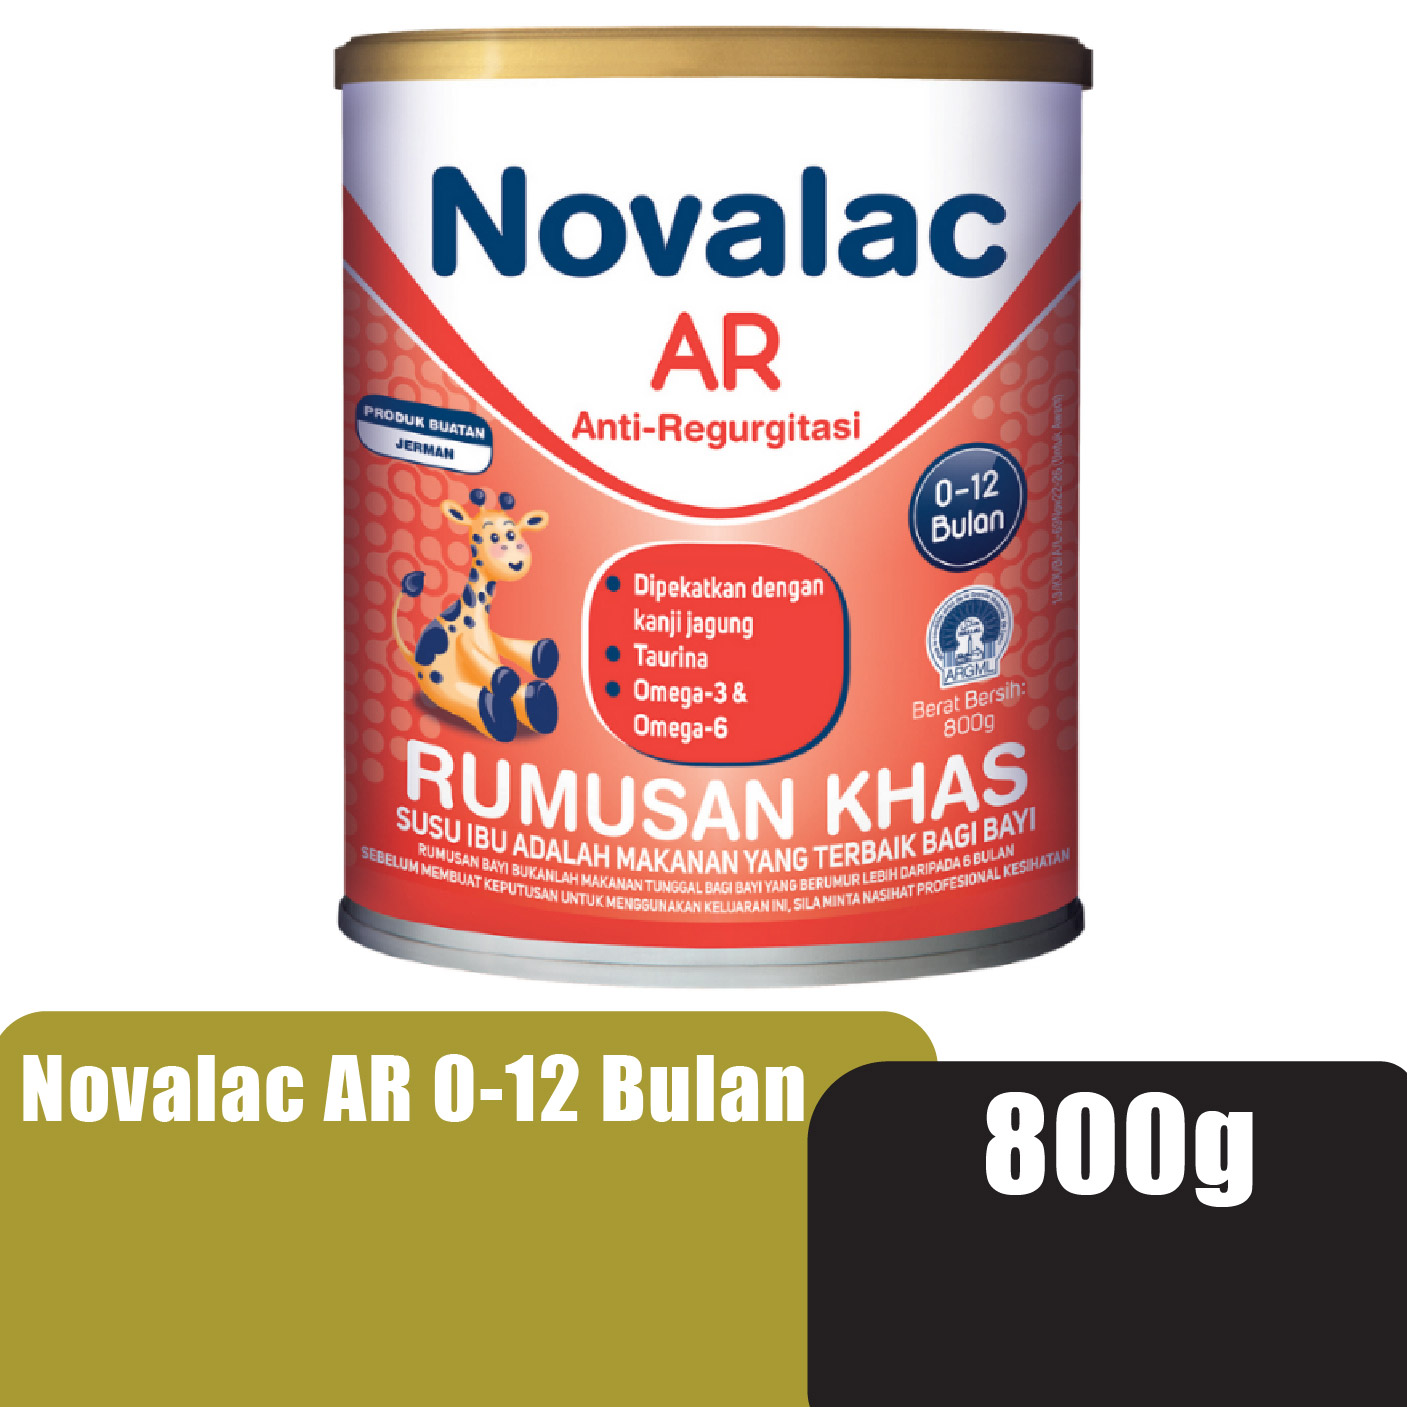 NOVALAC AR 800G 0-12BULAN